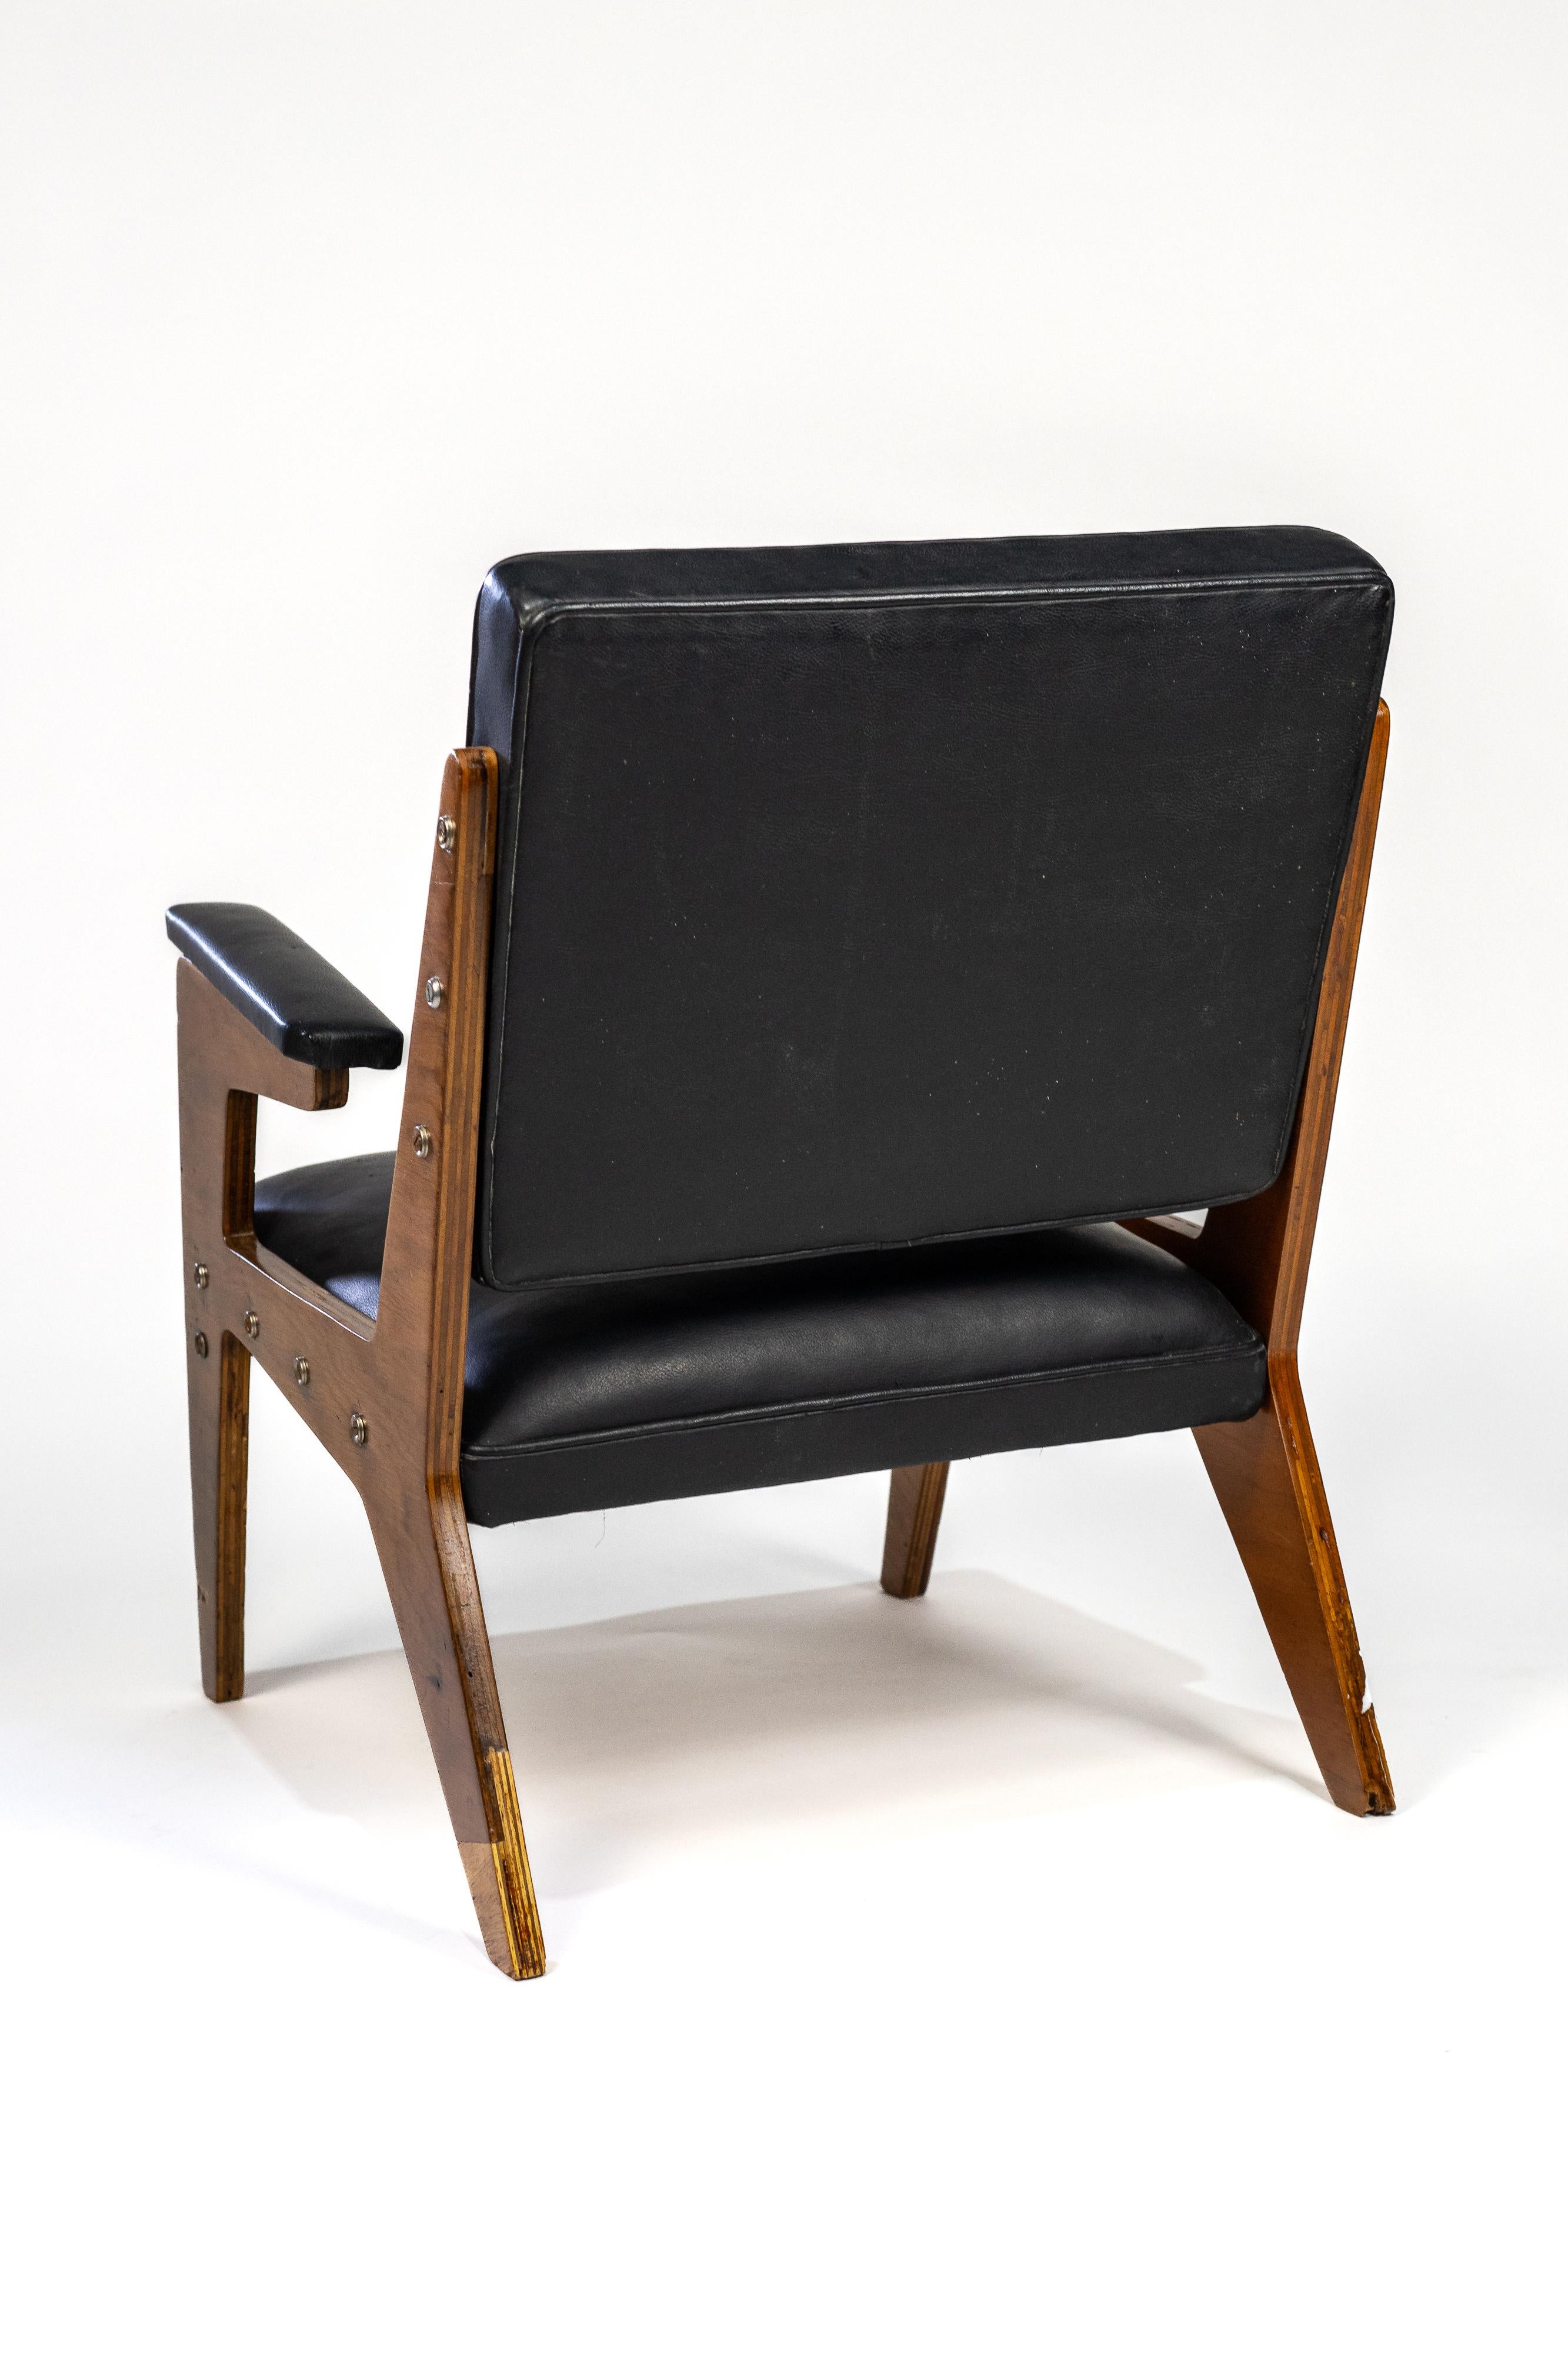 Cette chaise en contreplaqué et en similicuir témoigne de la créativité de José Zanine Caldas dans les années 1950.

Le choix du contreplaqué qu'il affectionne particulièrement durant cette décennie lui permet de laisser libre cours à ses dessins